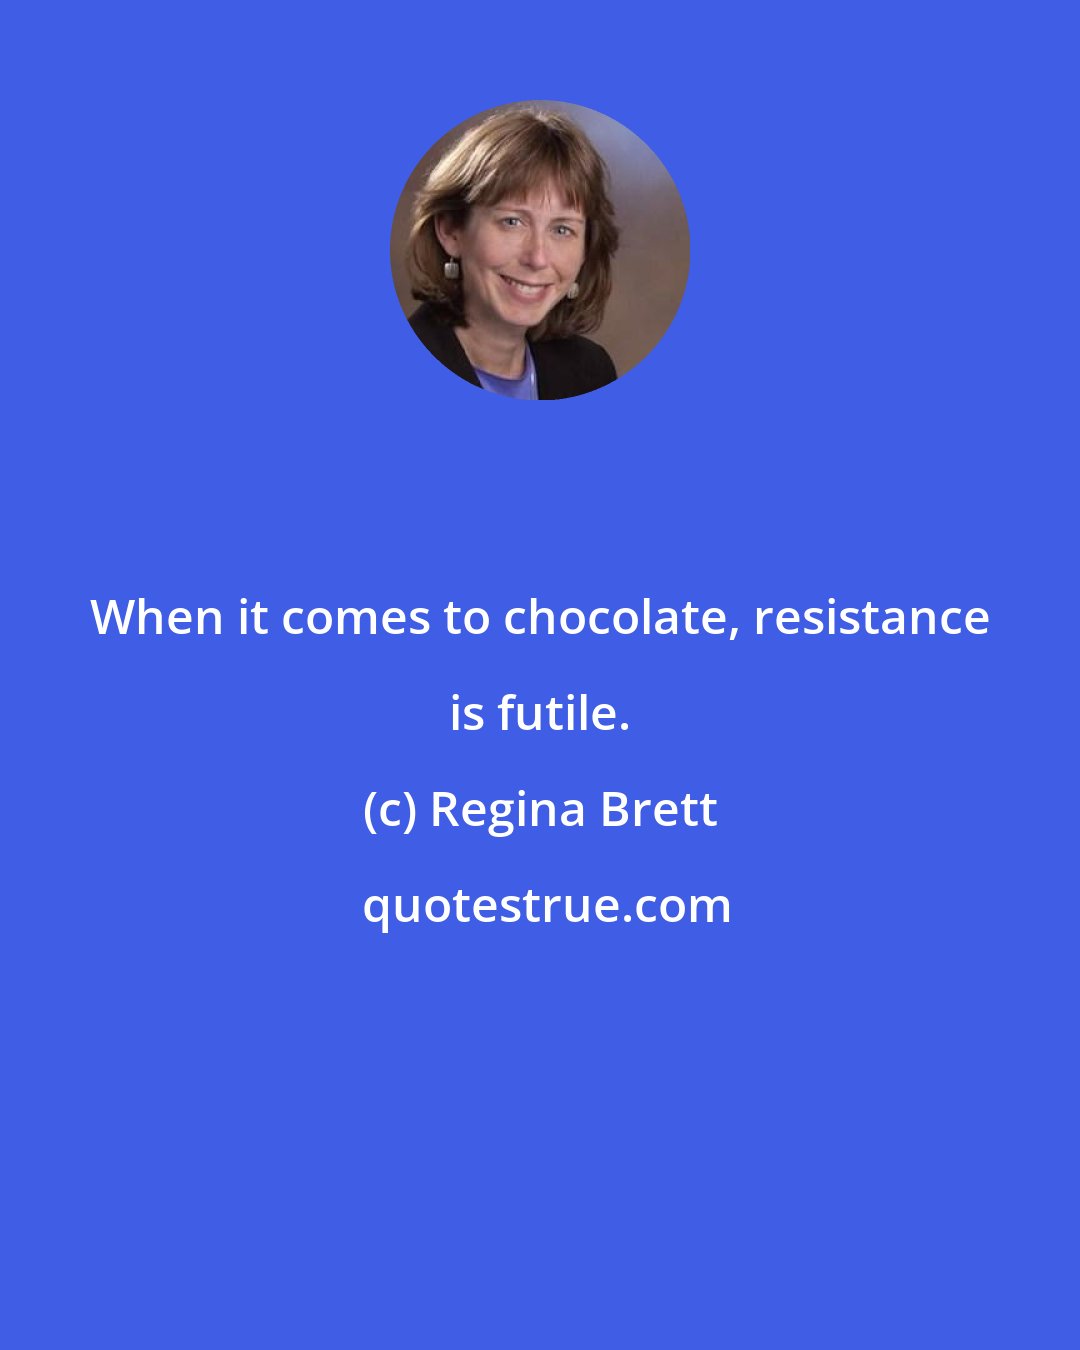 Regina Brett: When it comes to chocolate, resistance is futile.